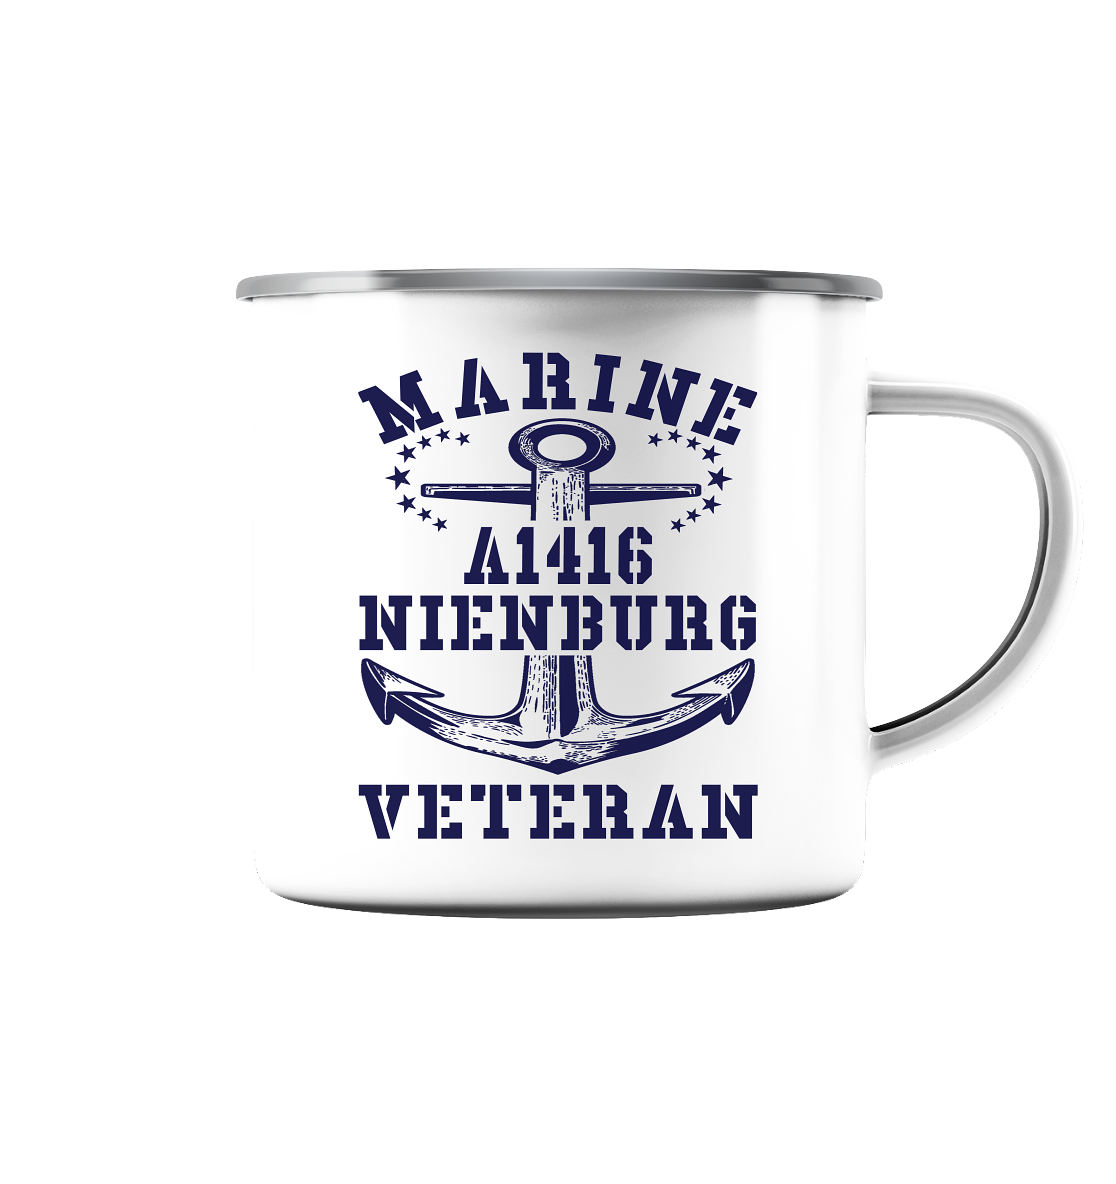 Troßschiff A1416 NIENBURG Marine Veteran  - Emaille Tasse (Silber)